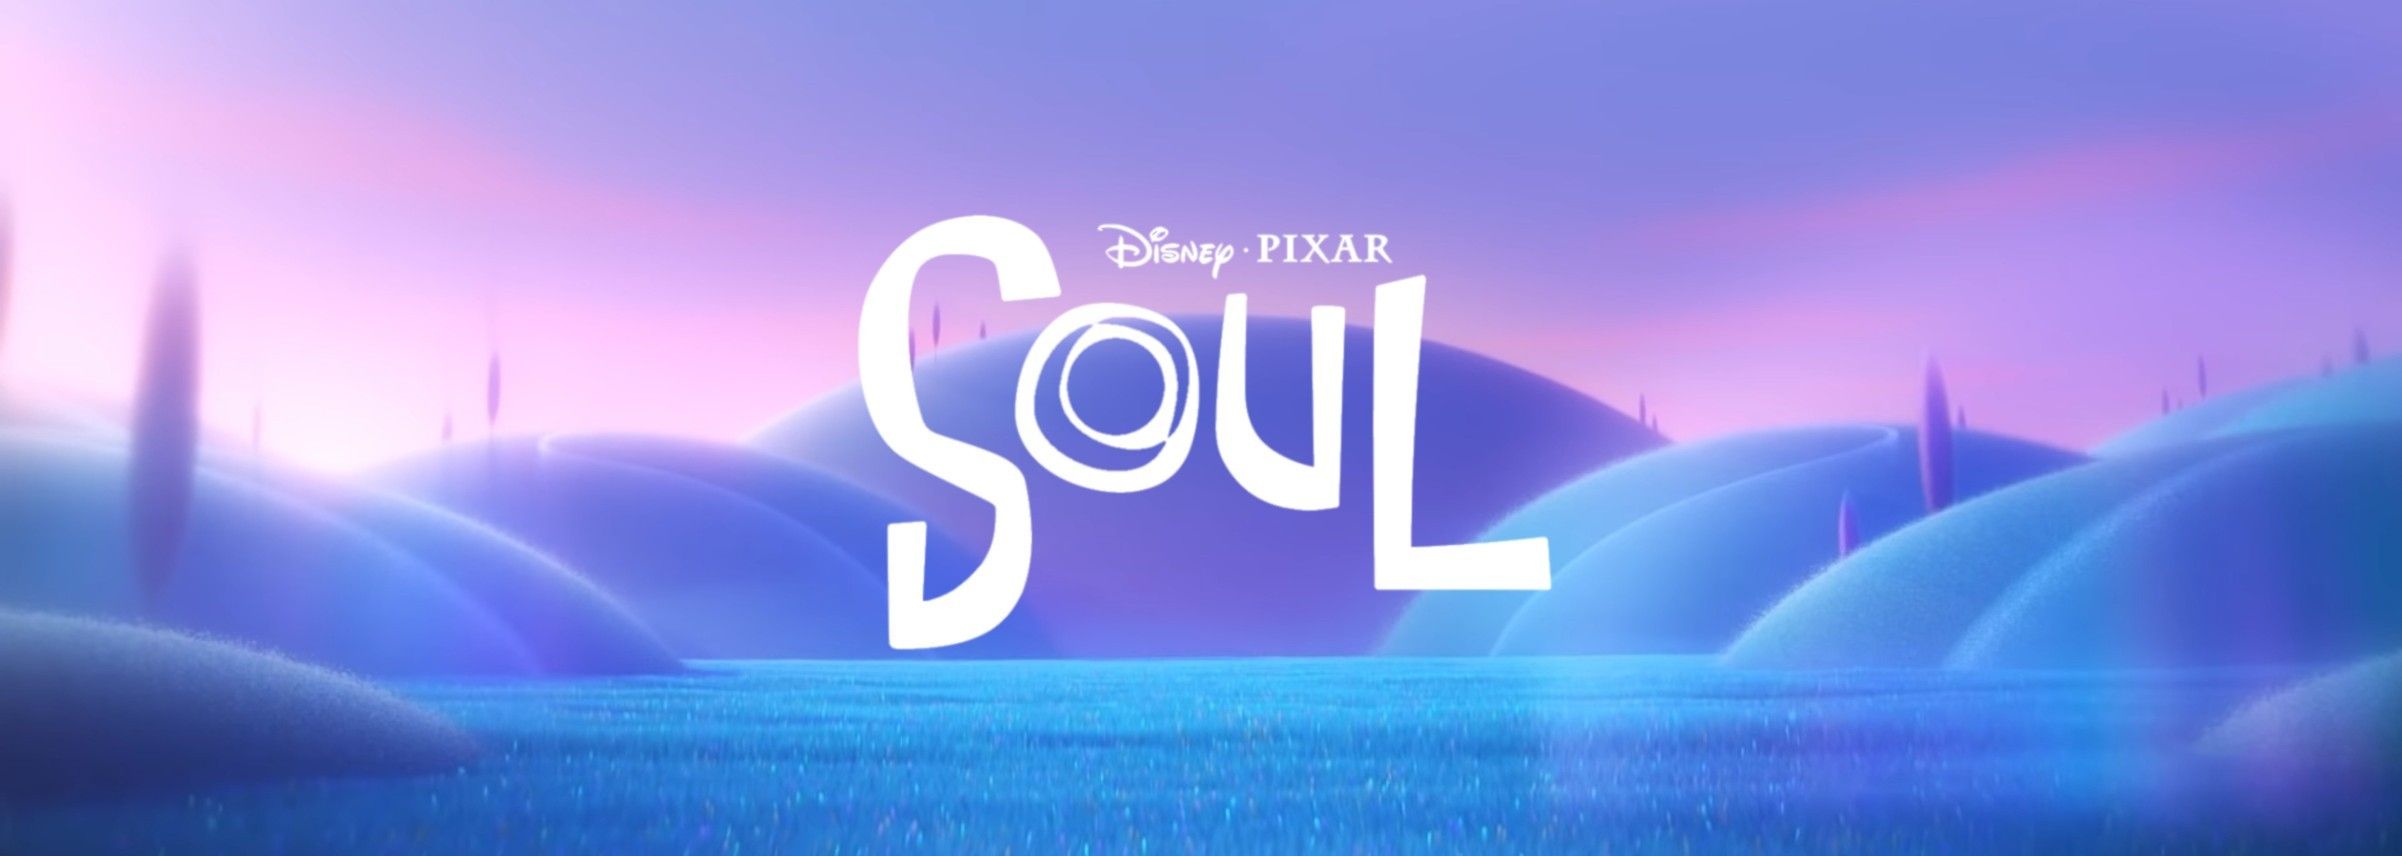 Pixar'S Soul Wallpapers